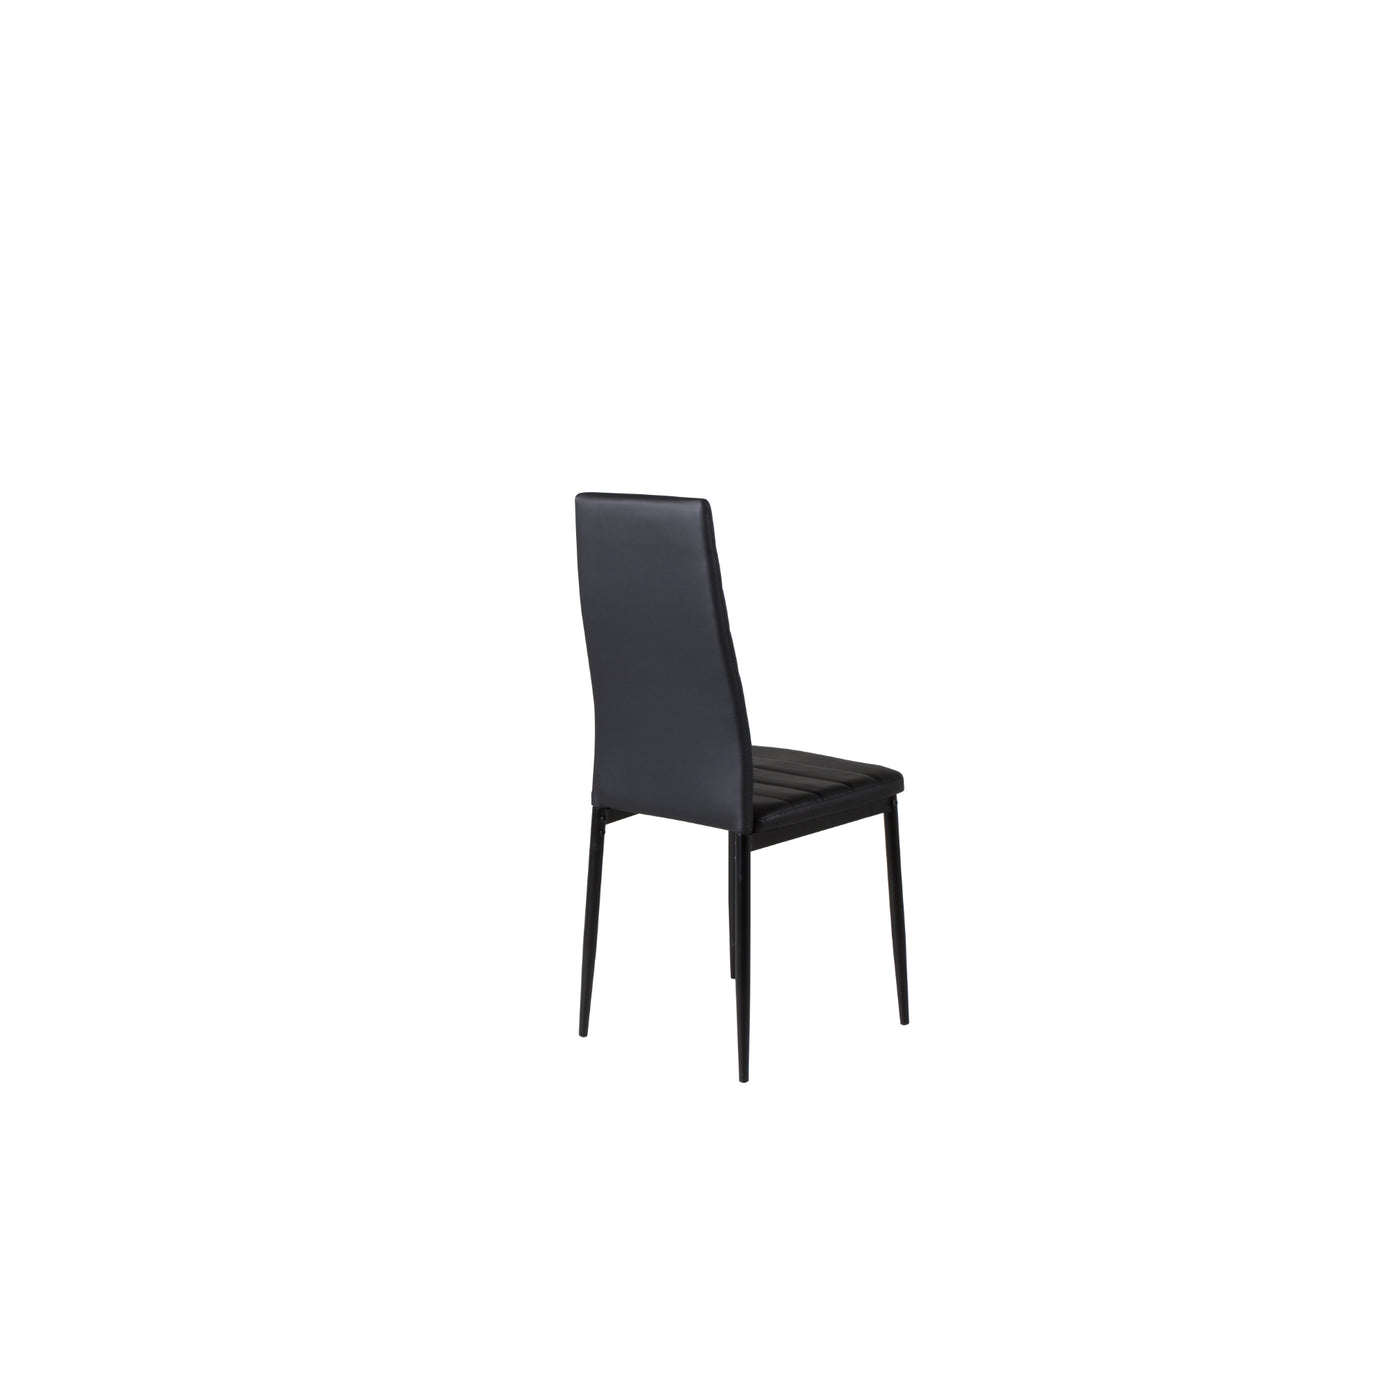 Velma Esszimmerstuhl mit hoher Rückenlehne – schwarze Beine – schwarzes PU 2er Set